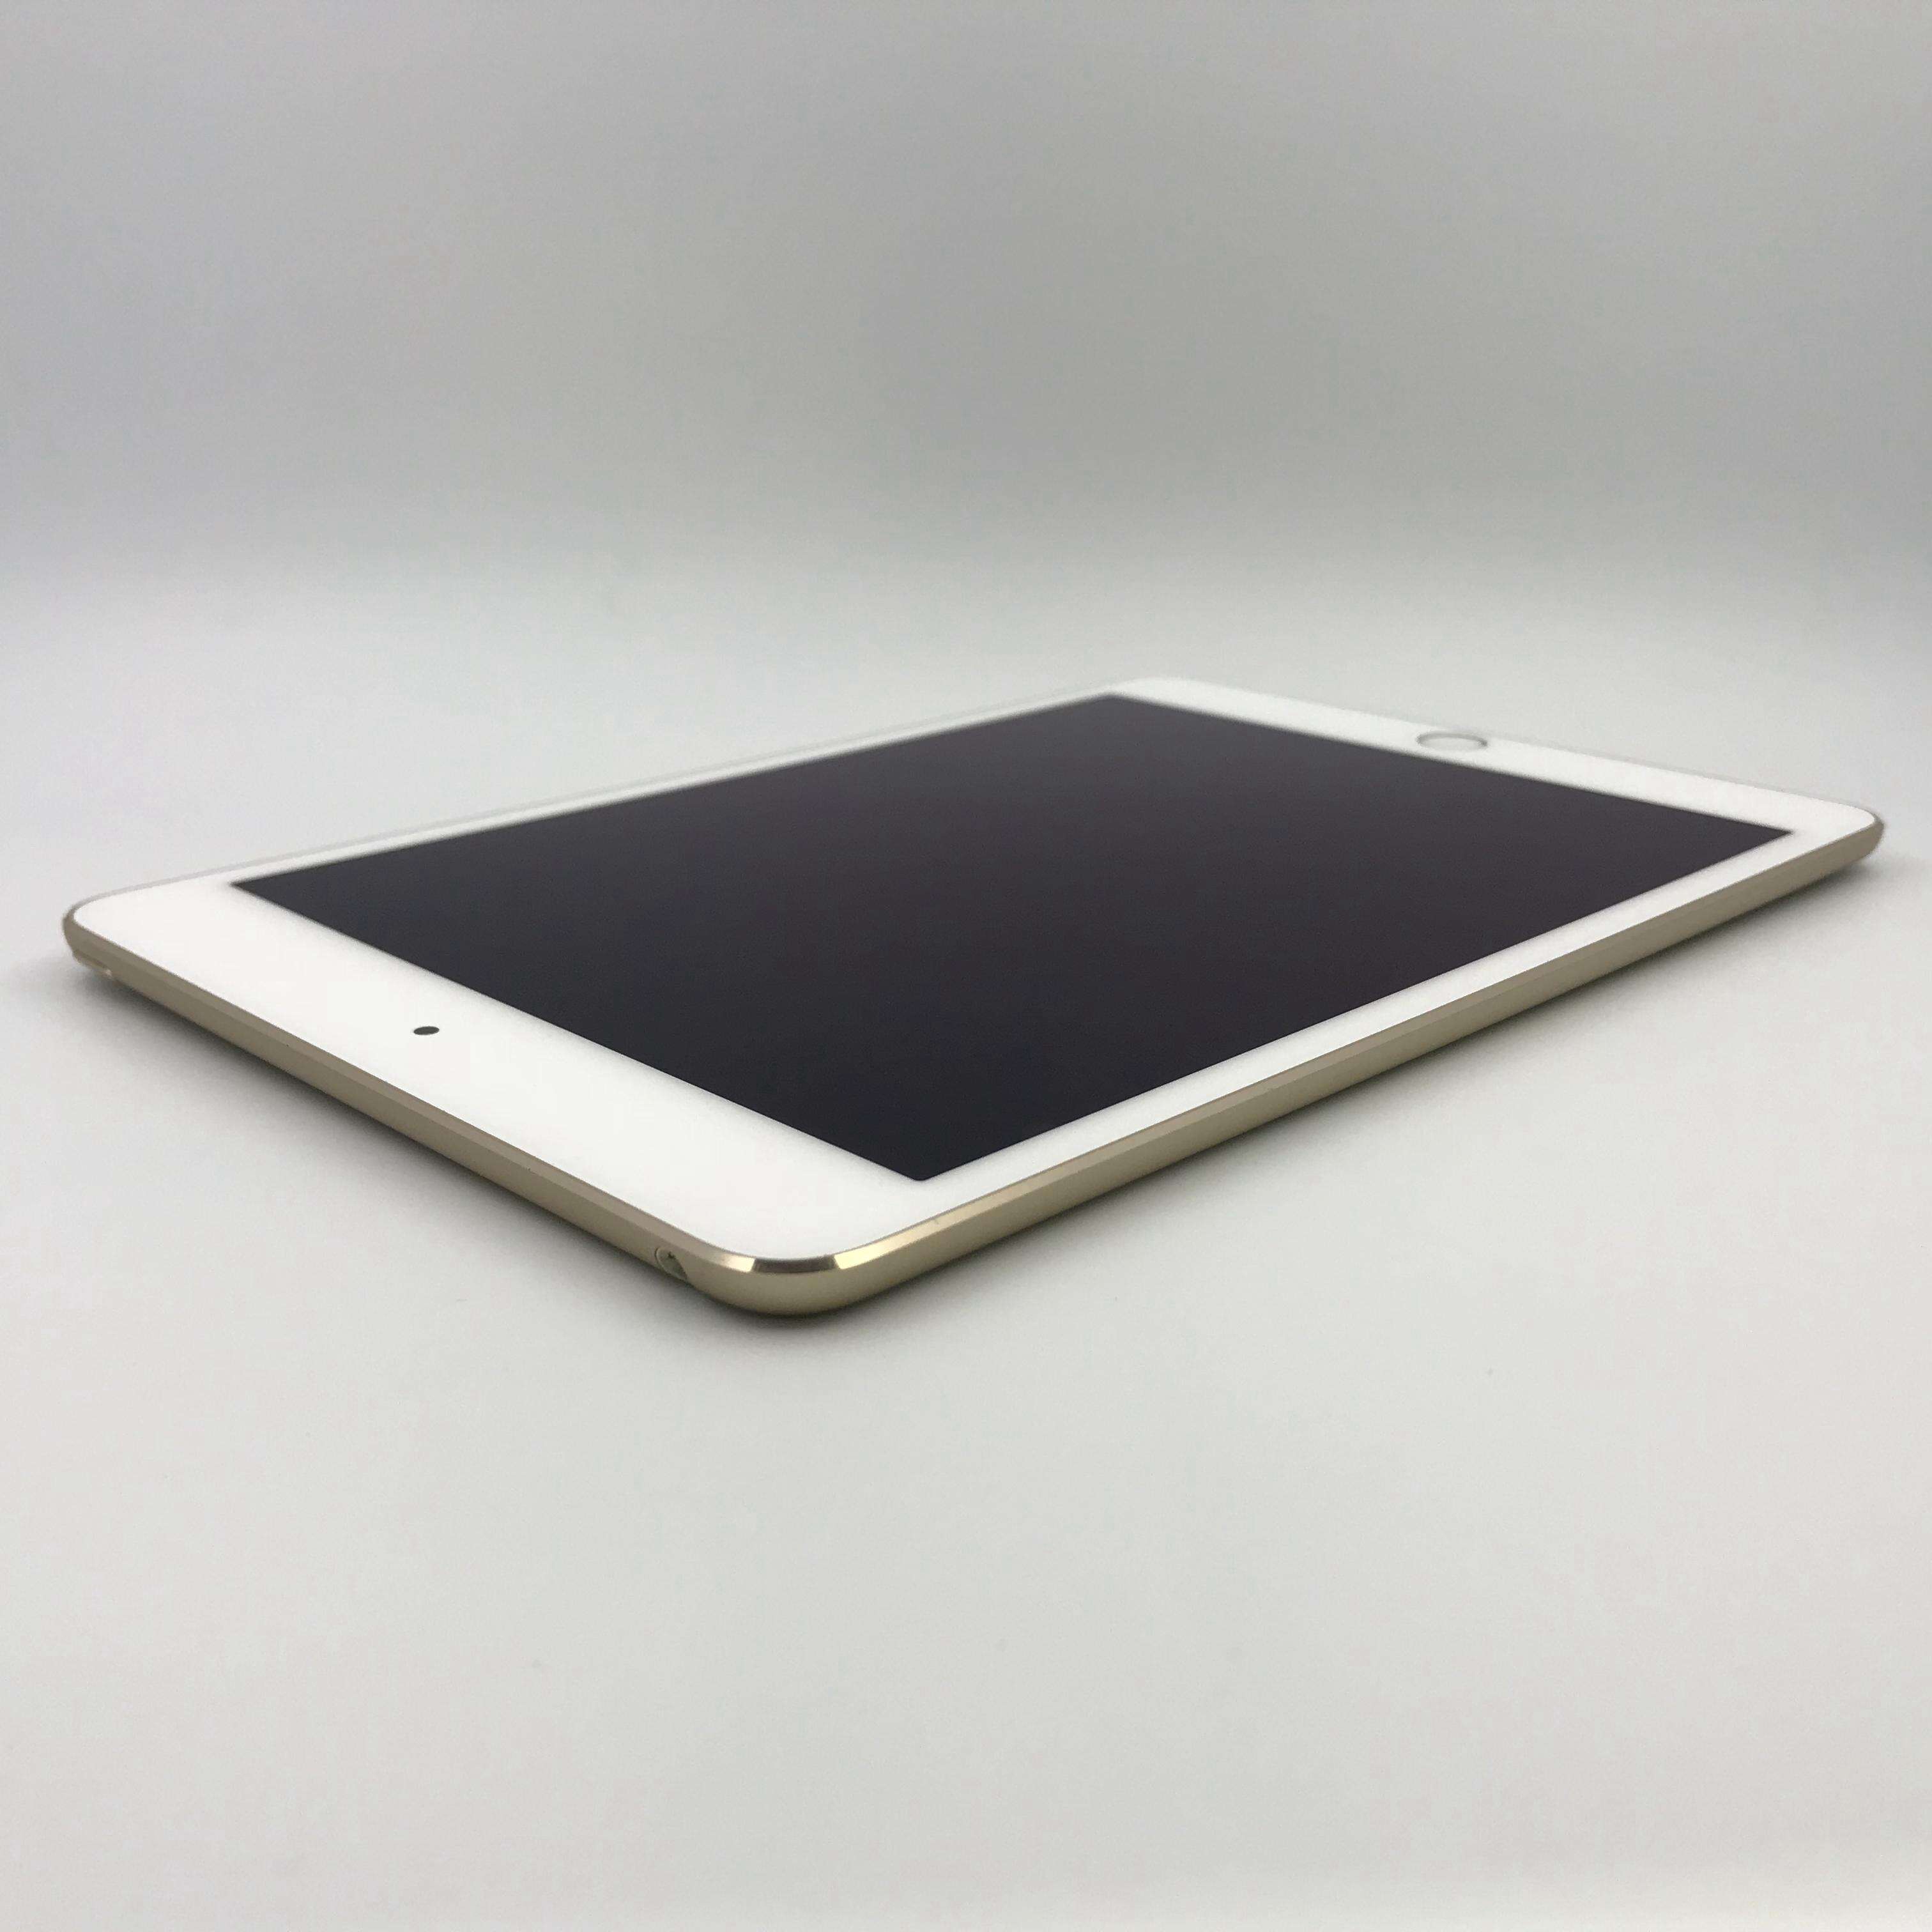 iPad mini 4 64G 国行WIFI版